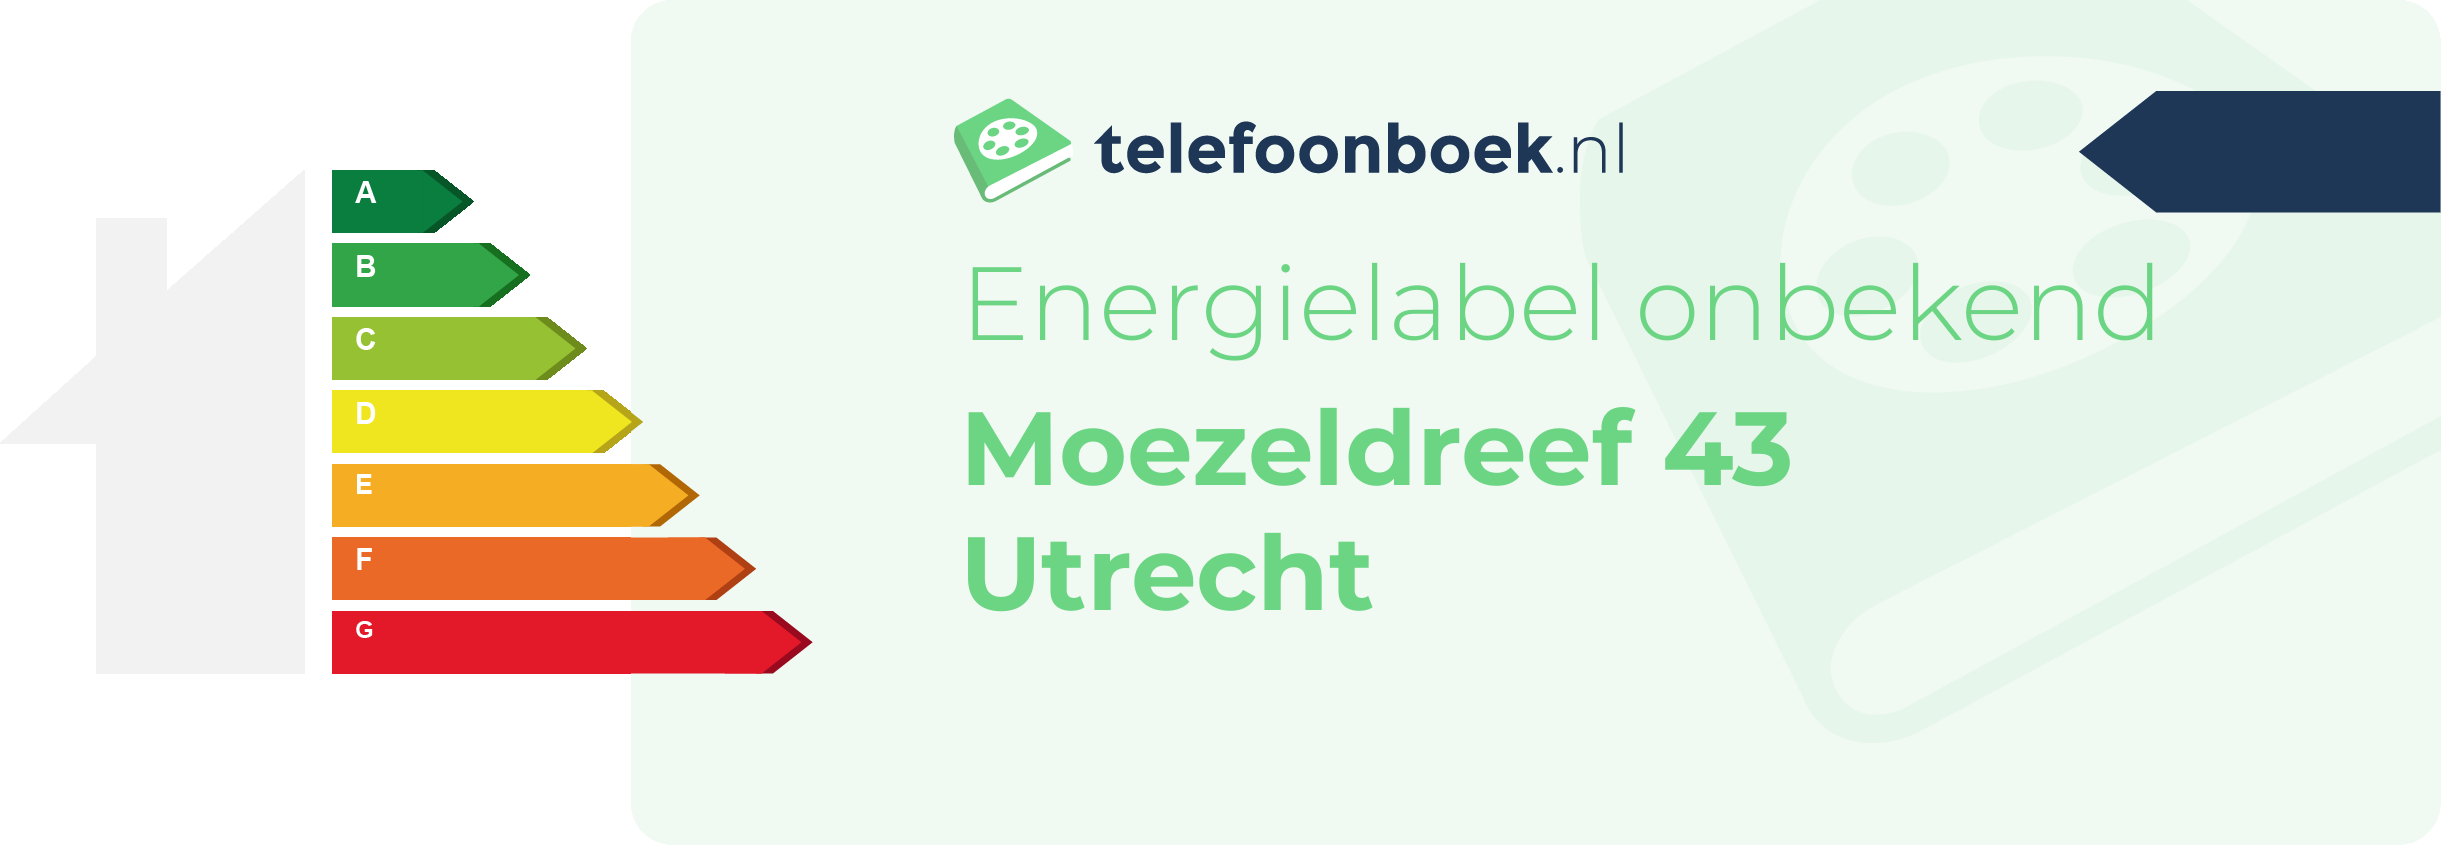 Energielabel Moezeldreef 43 Utrecht